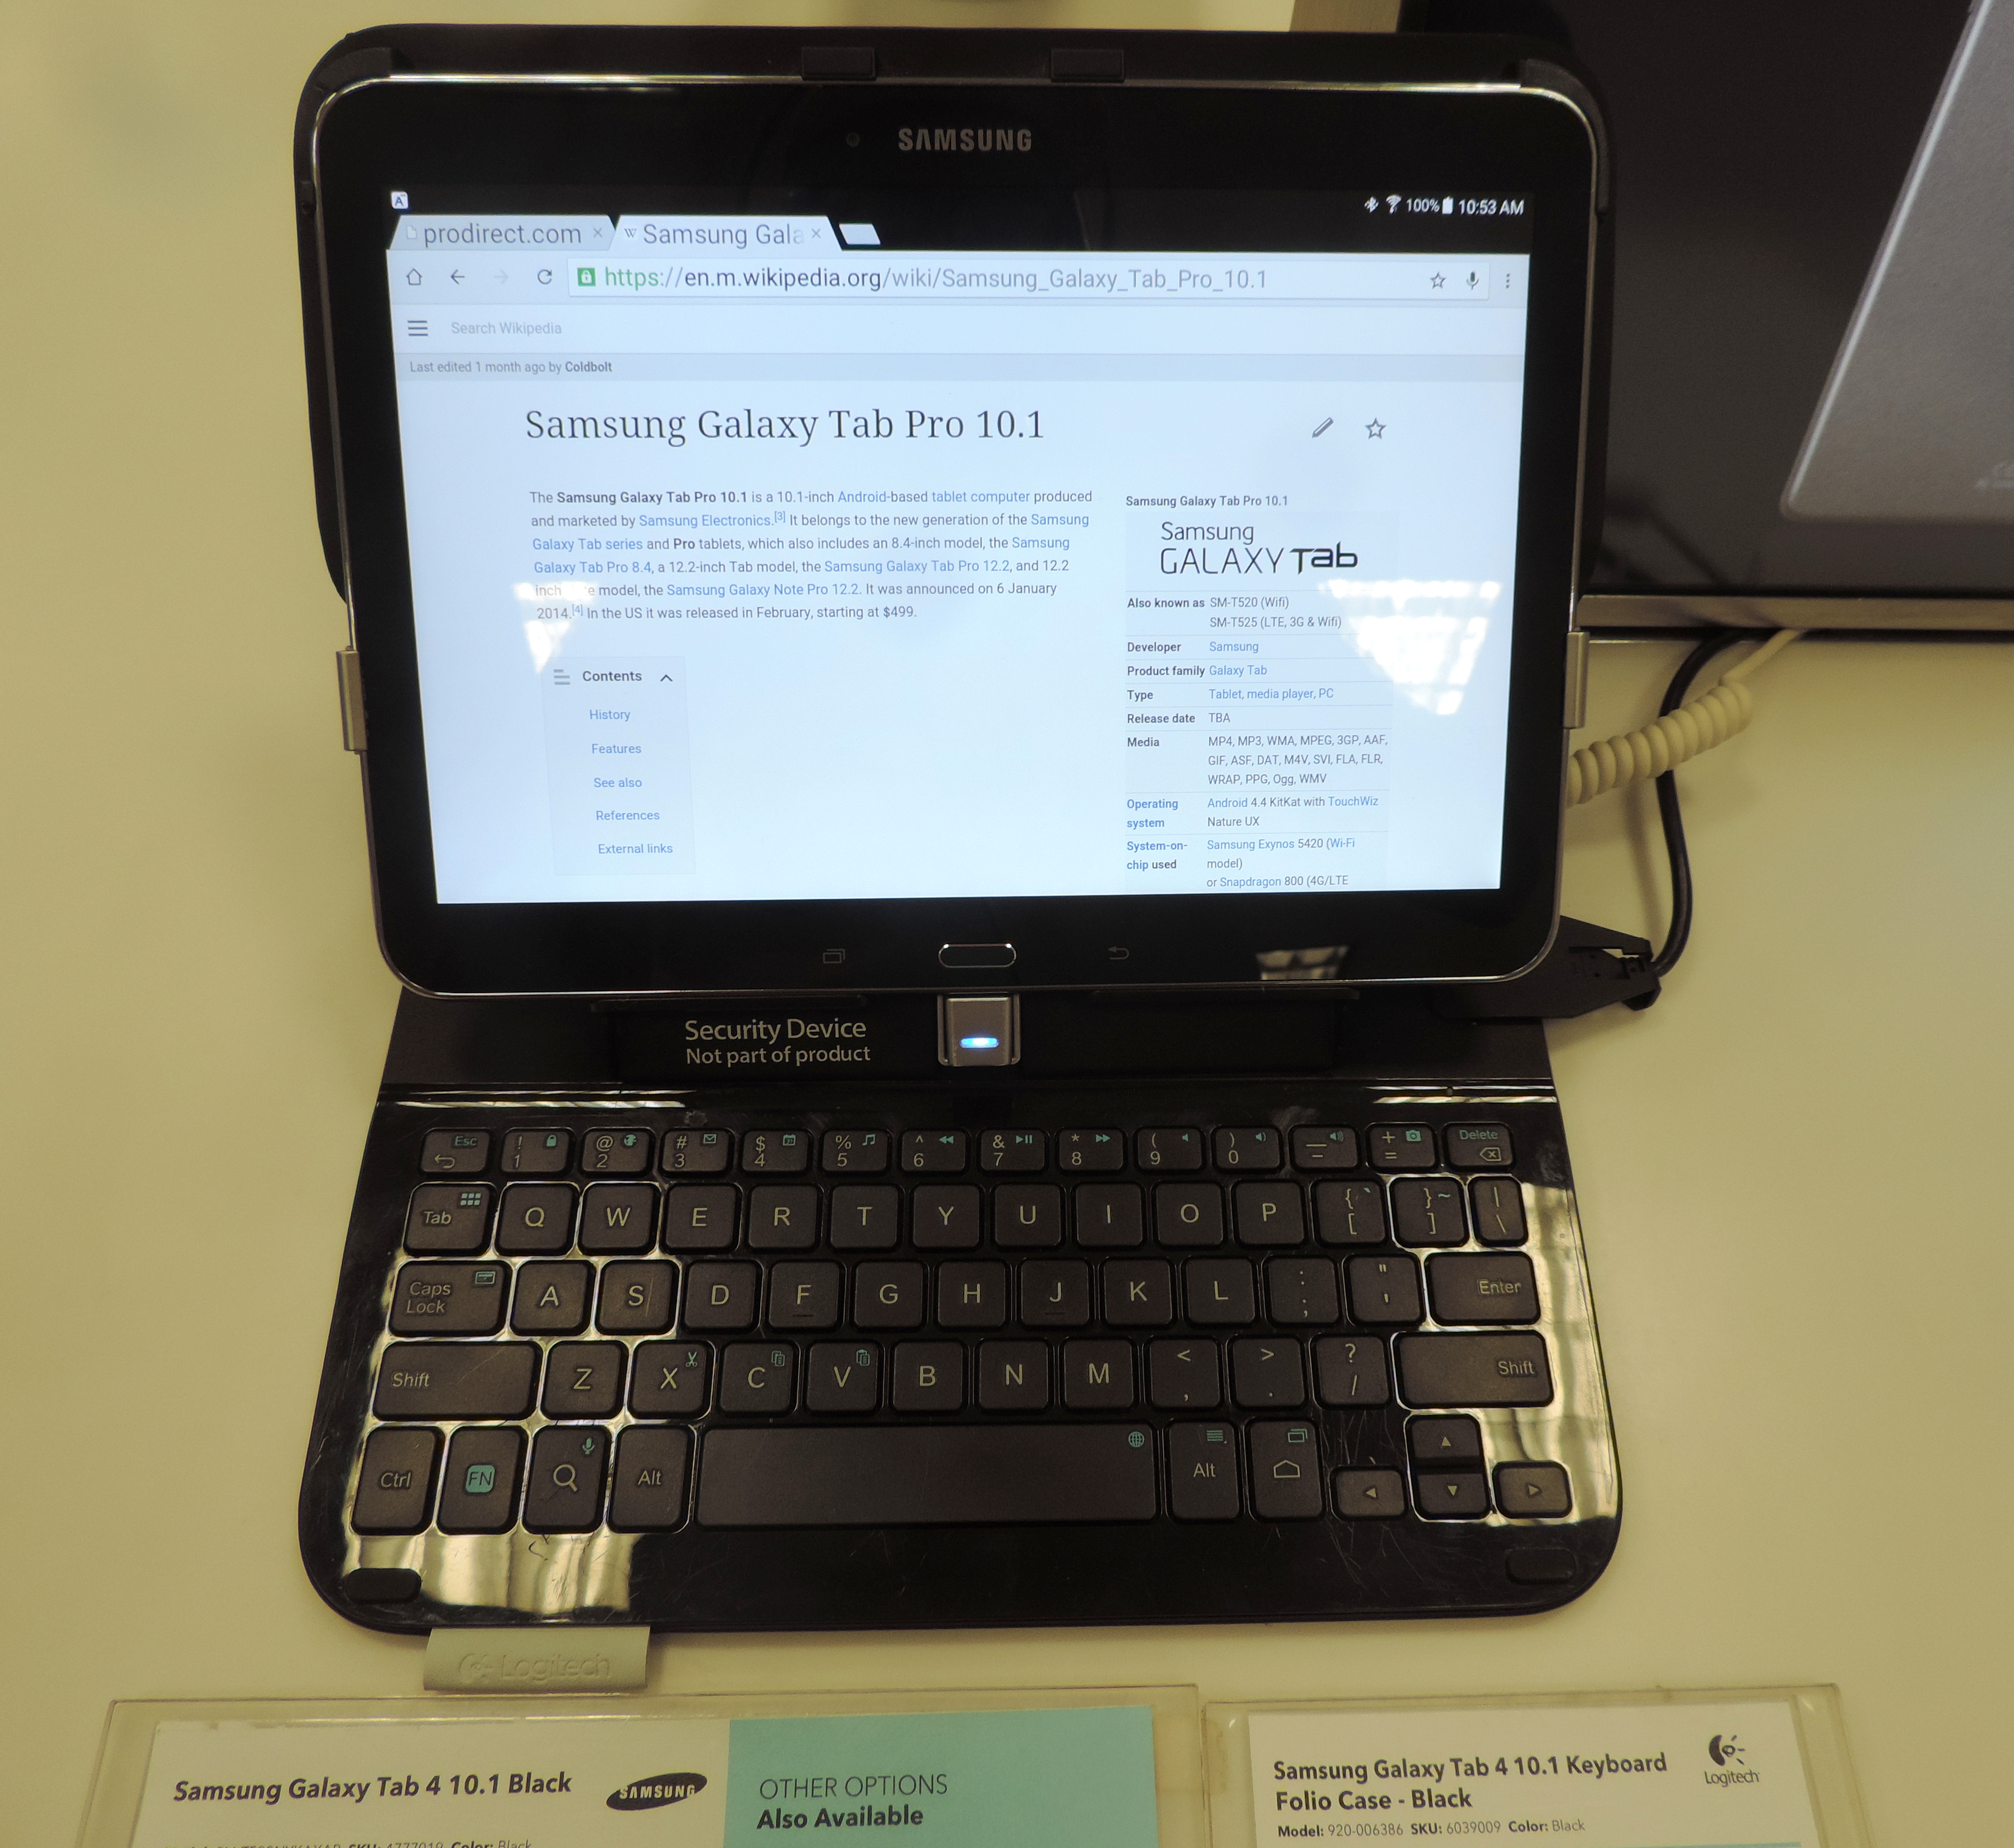 Samsung Galaxy Tab 4 10.1 - Wikipedia, la enciclopedia libre